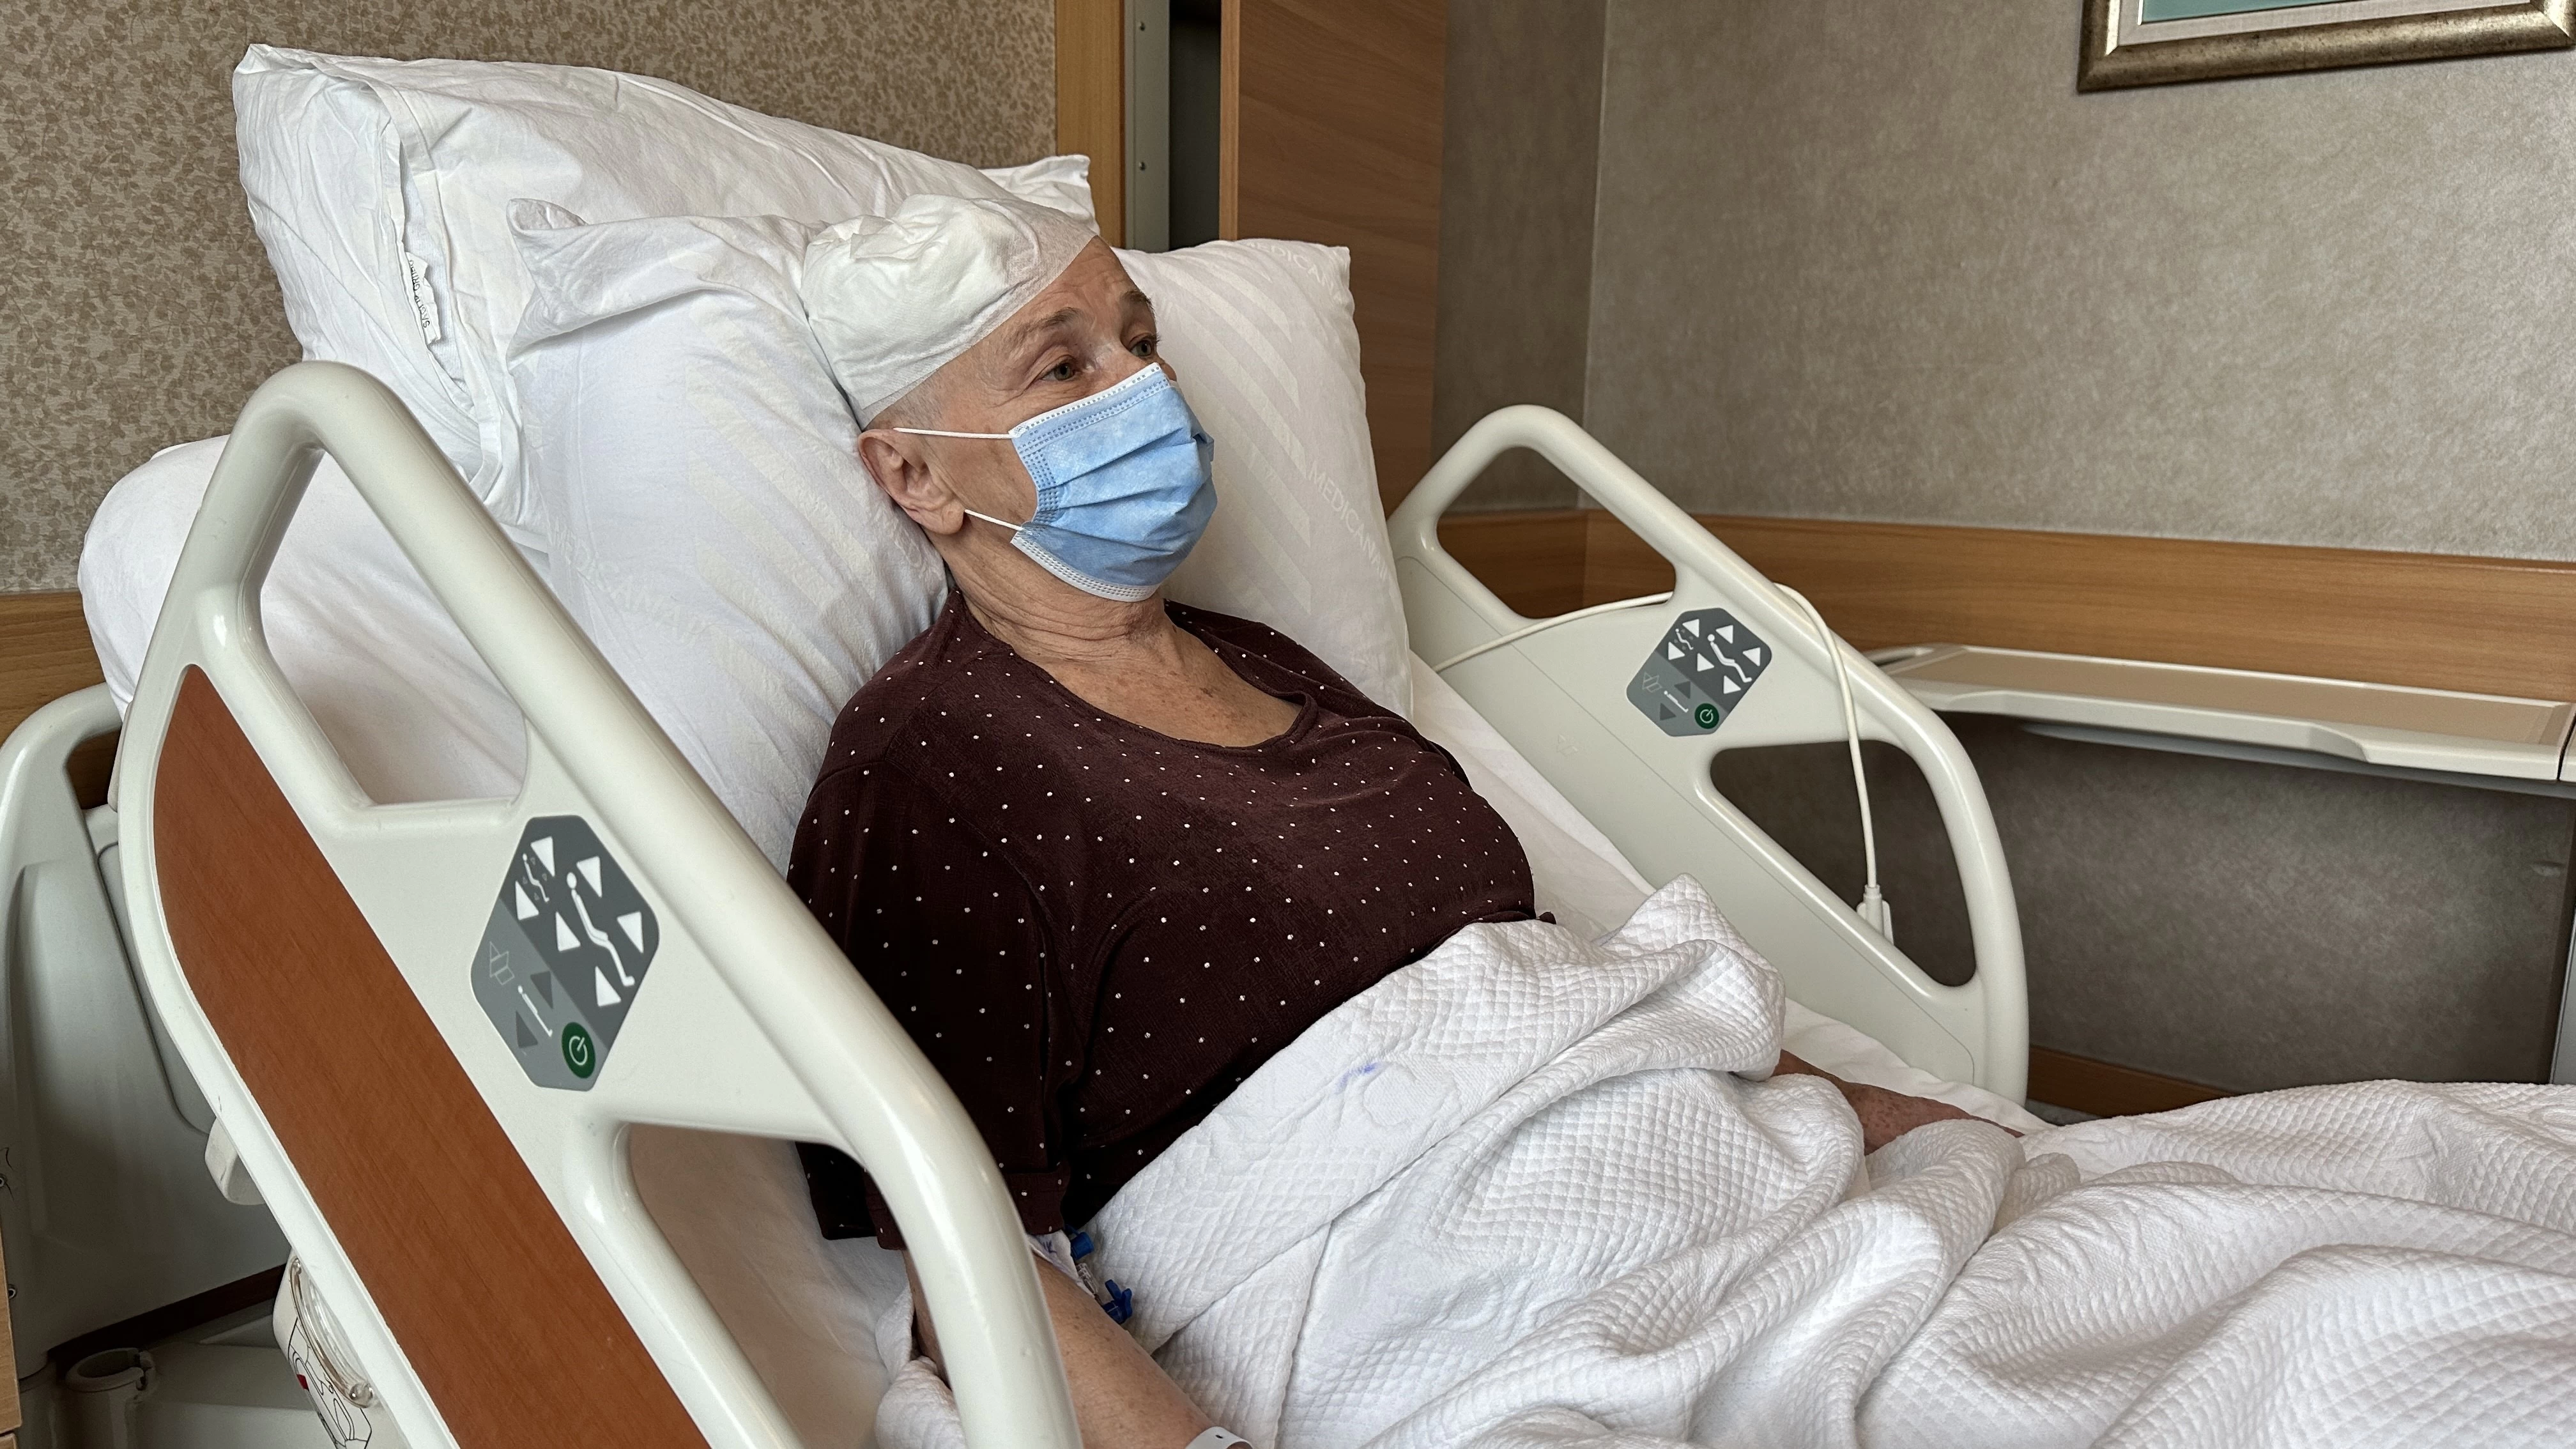 Ankara'da 69 yaşındaki hastanın beyin ameliyatı genel anestezi olmadan gerçekleştirildi!